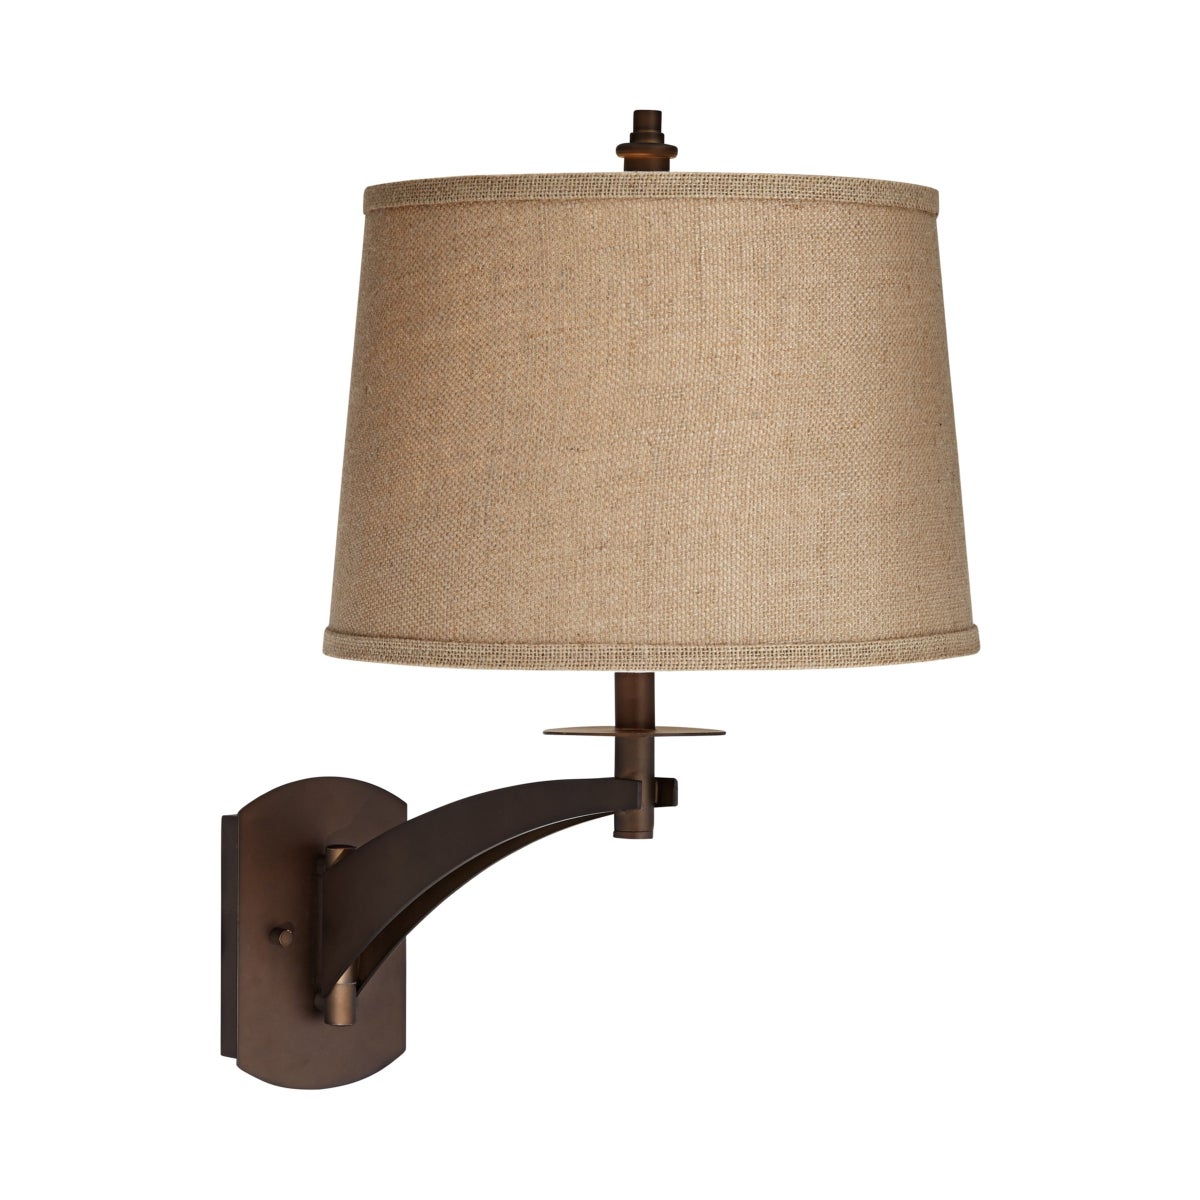 RUMMEL SWING ARM WALL LAMP (89-5923-20)